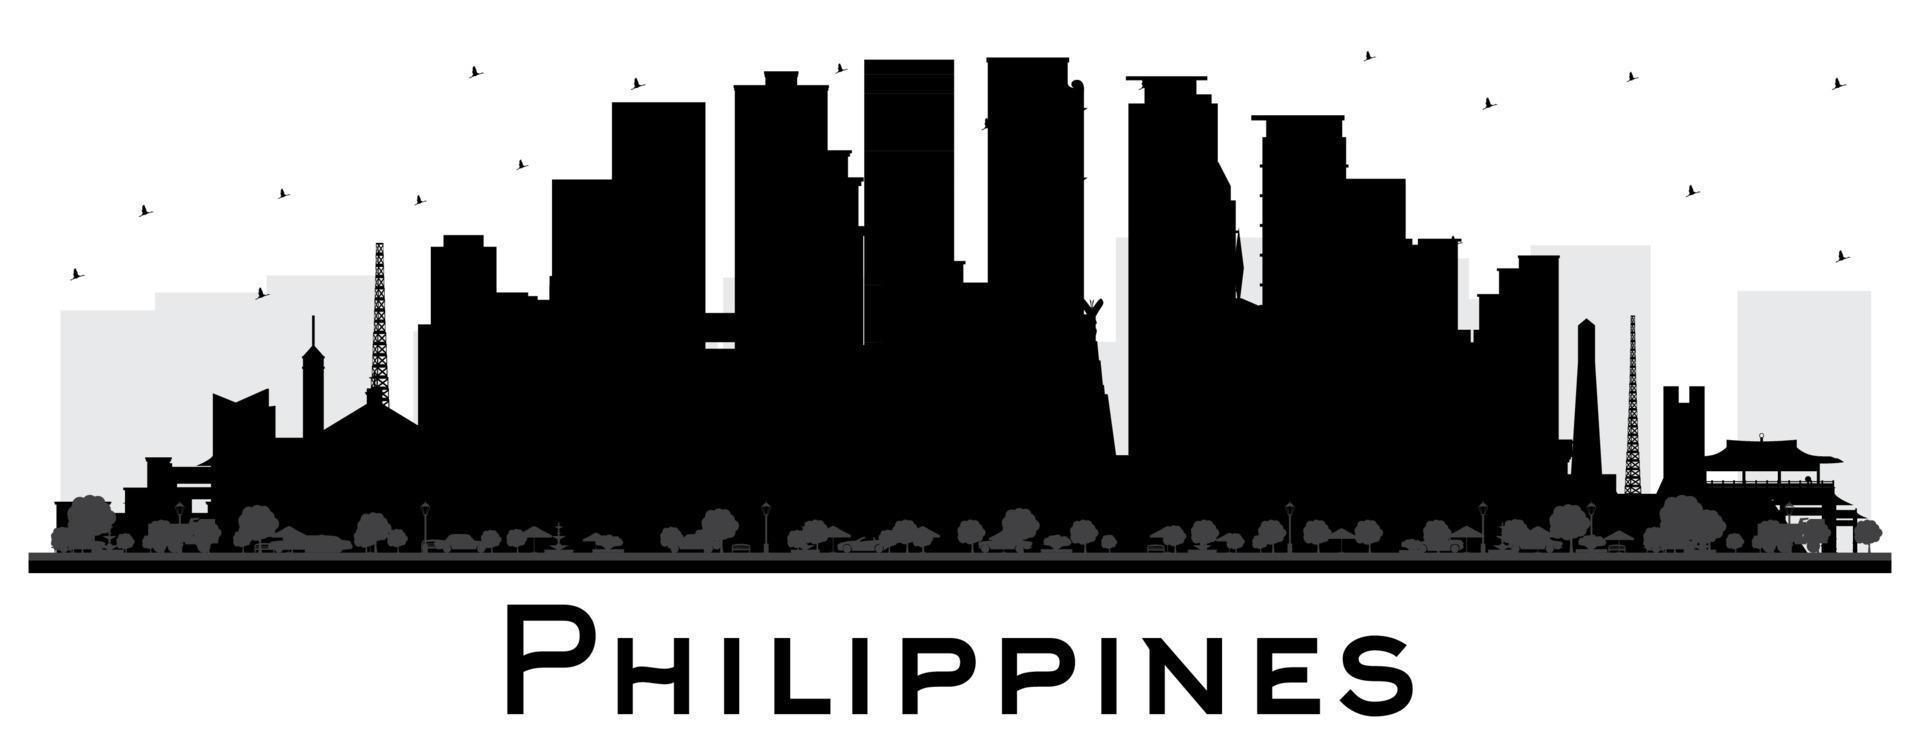 philippinische stadtsilhouette mit schwarzen gebäuden isoliert auf weiß. vektor